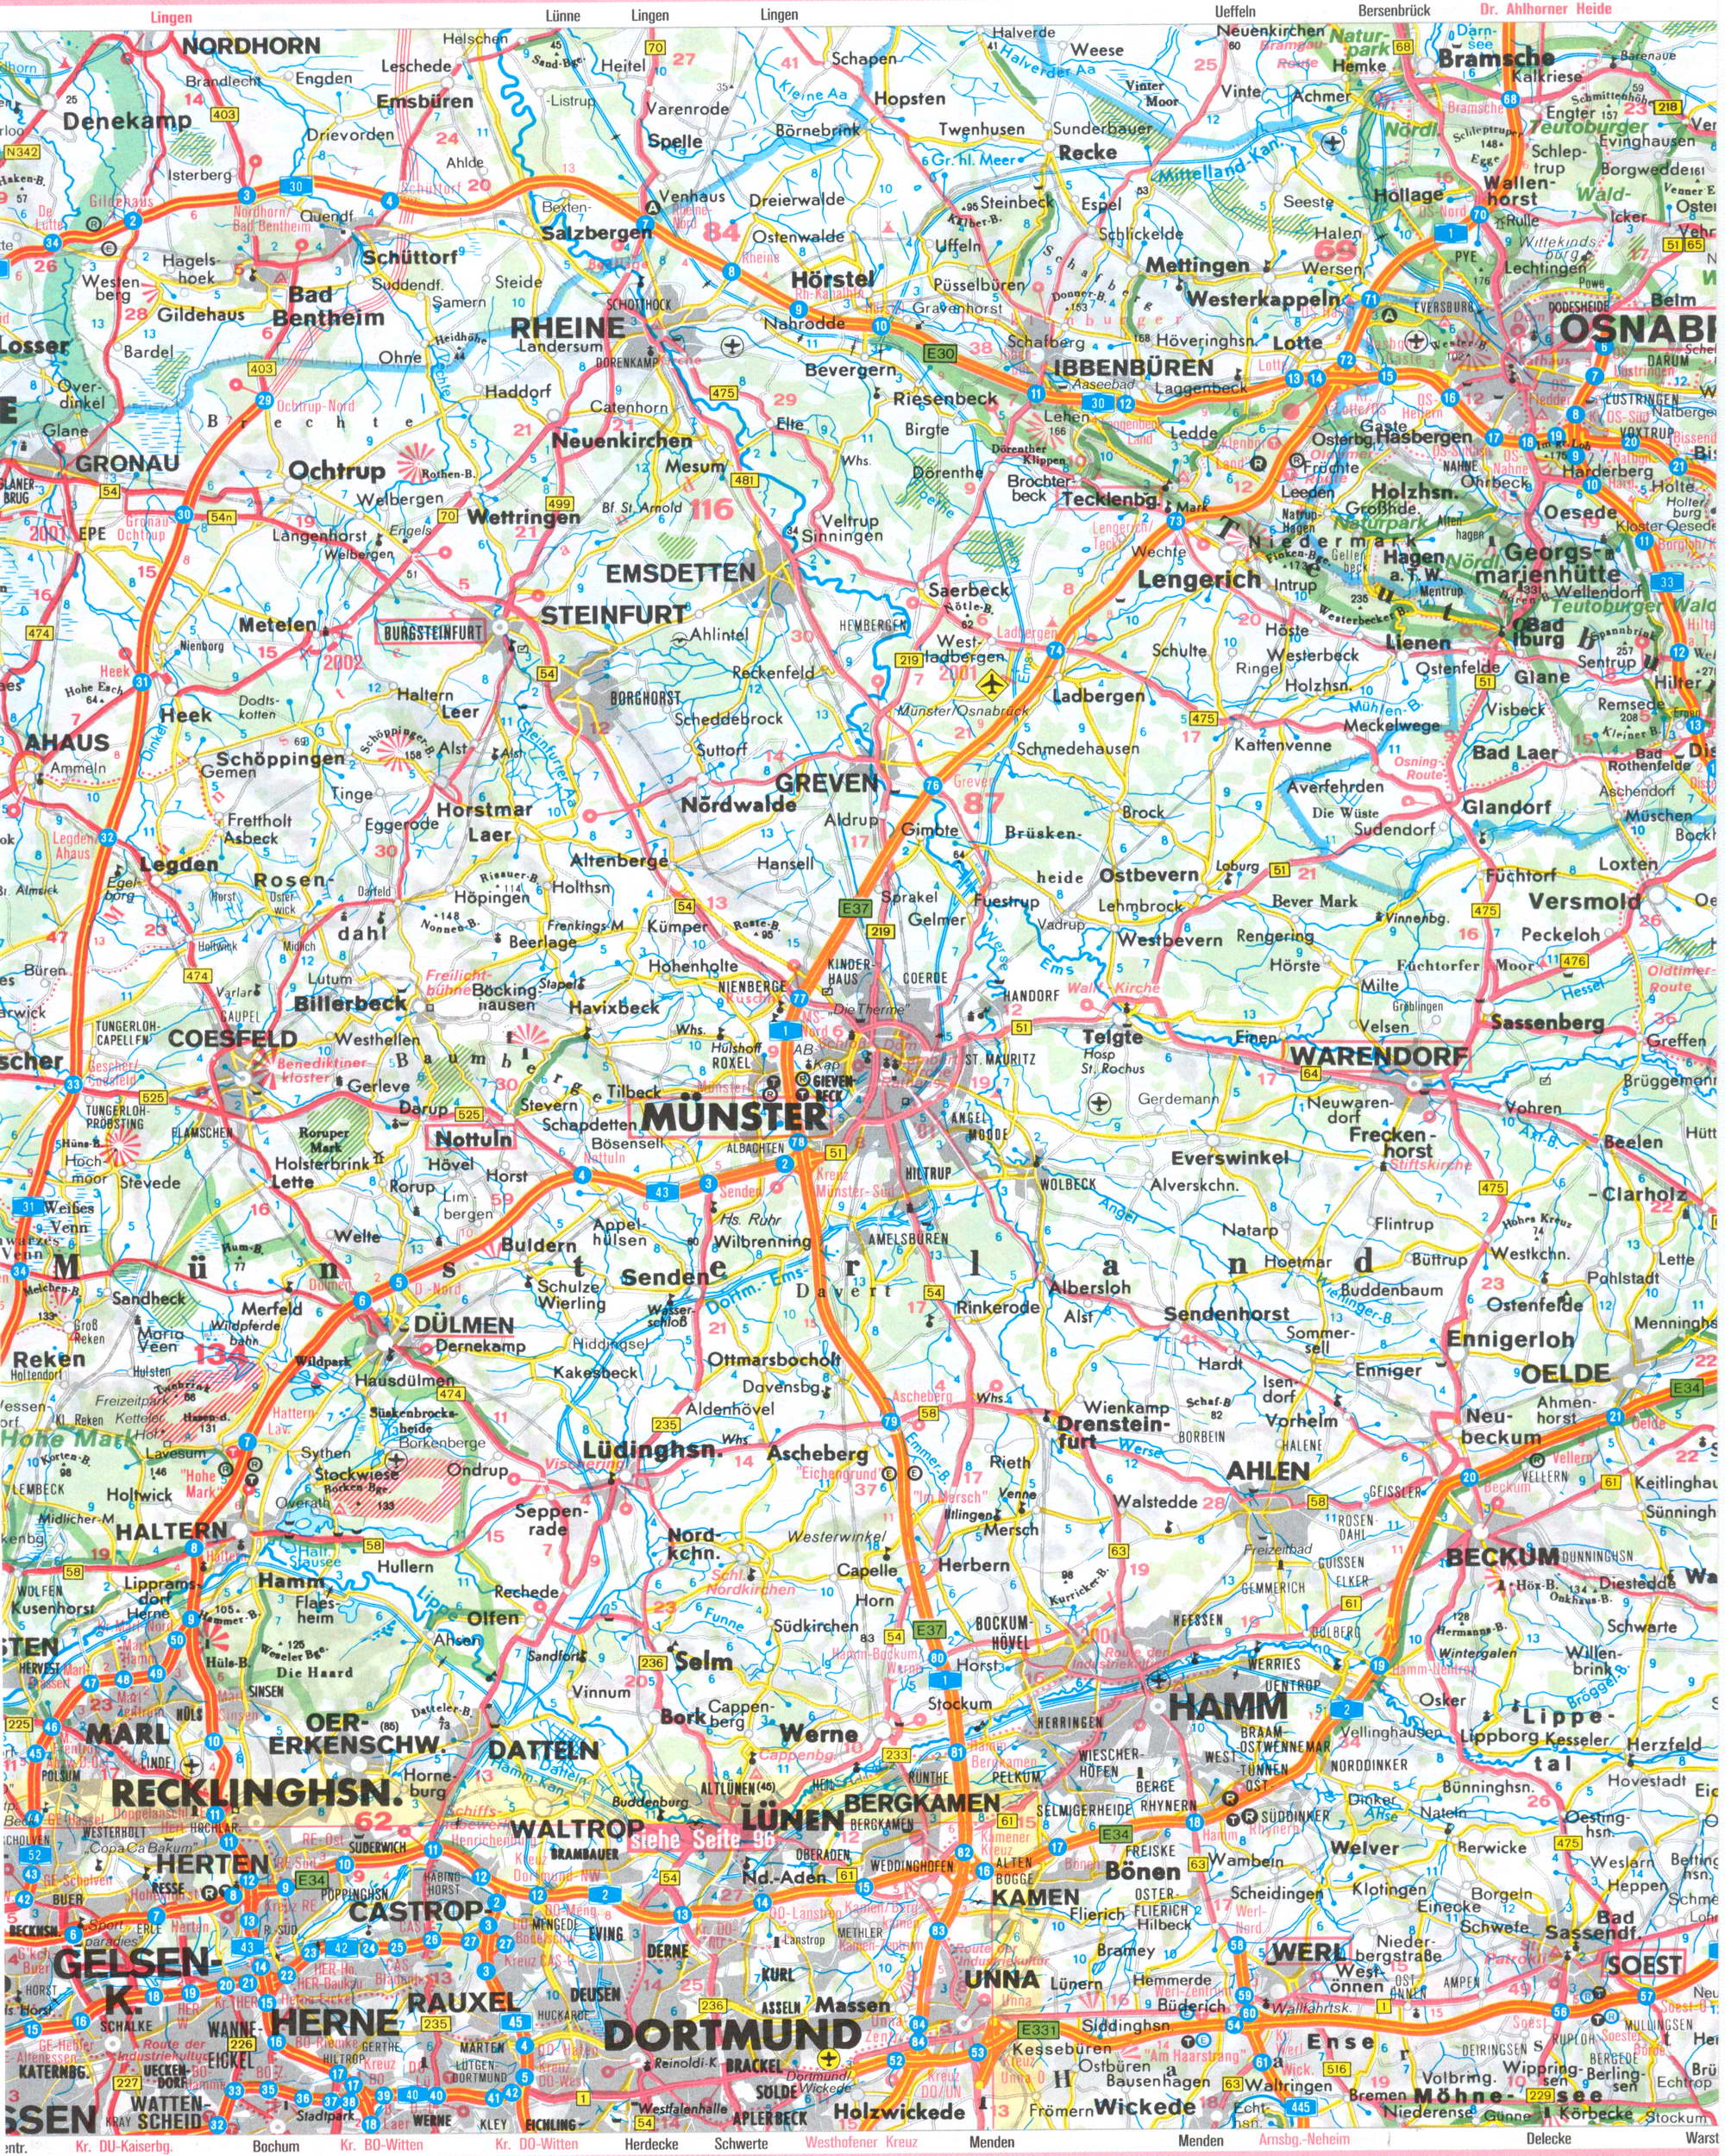  Автомобильная карта земли Северный Рейн - Вестфалия. Подробная карта земли Северный Рейн-Вестфалия, B0 - 